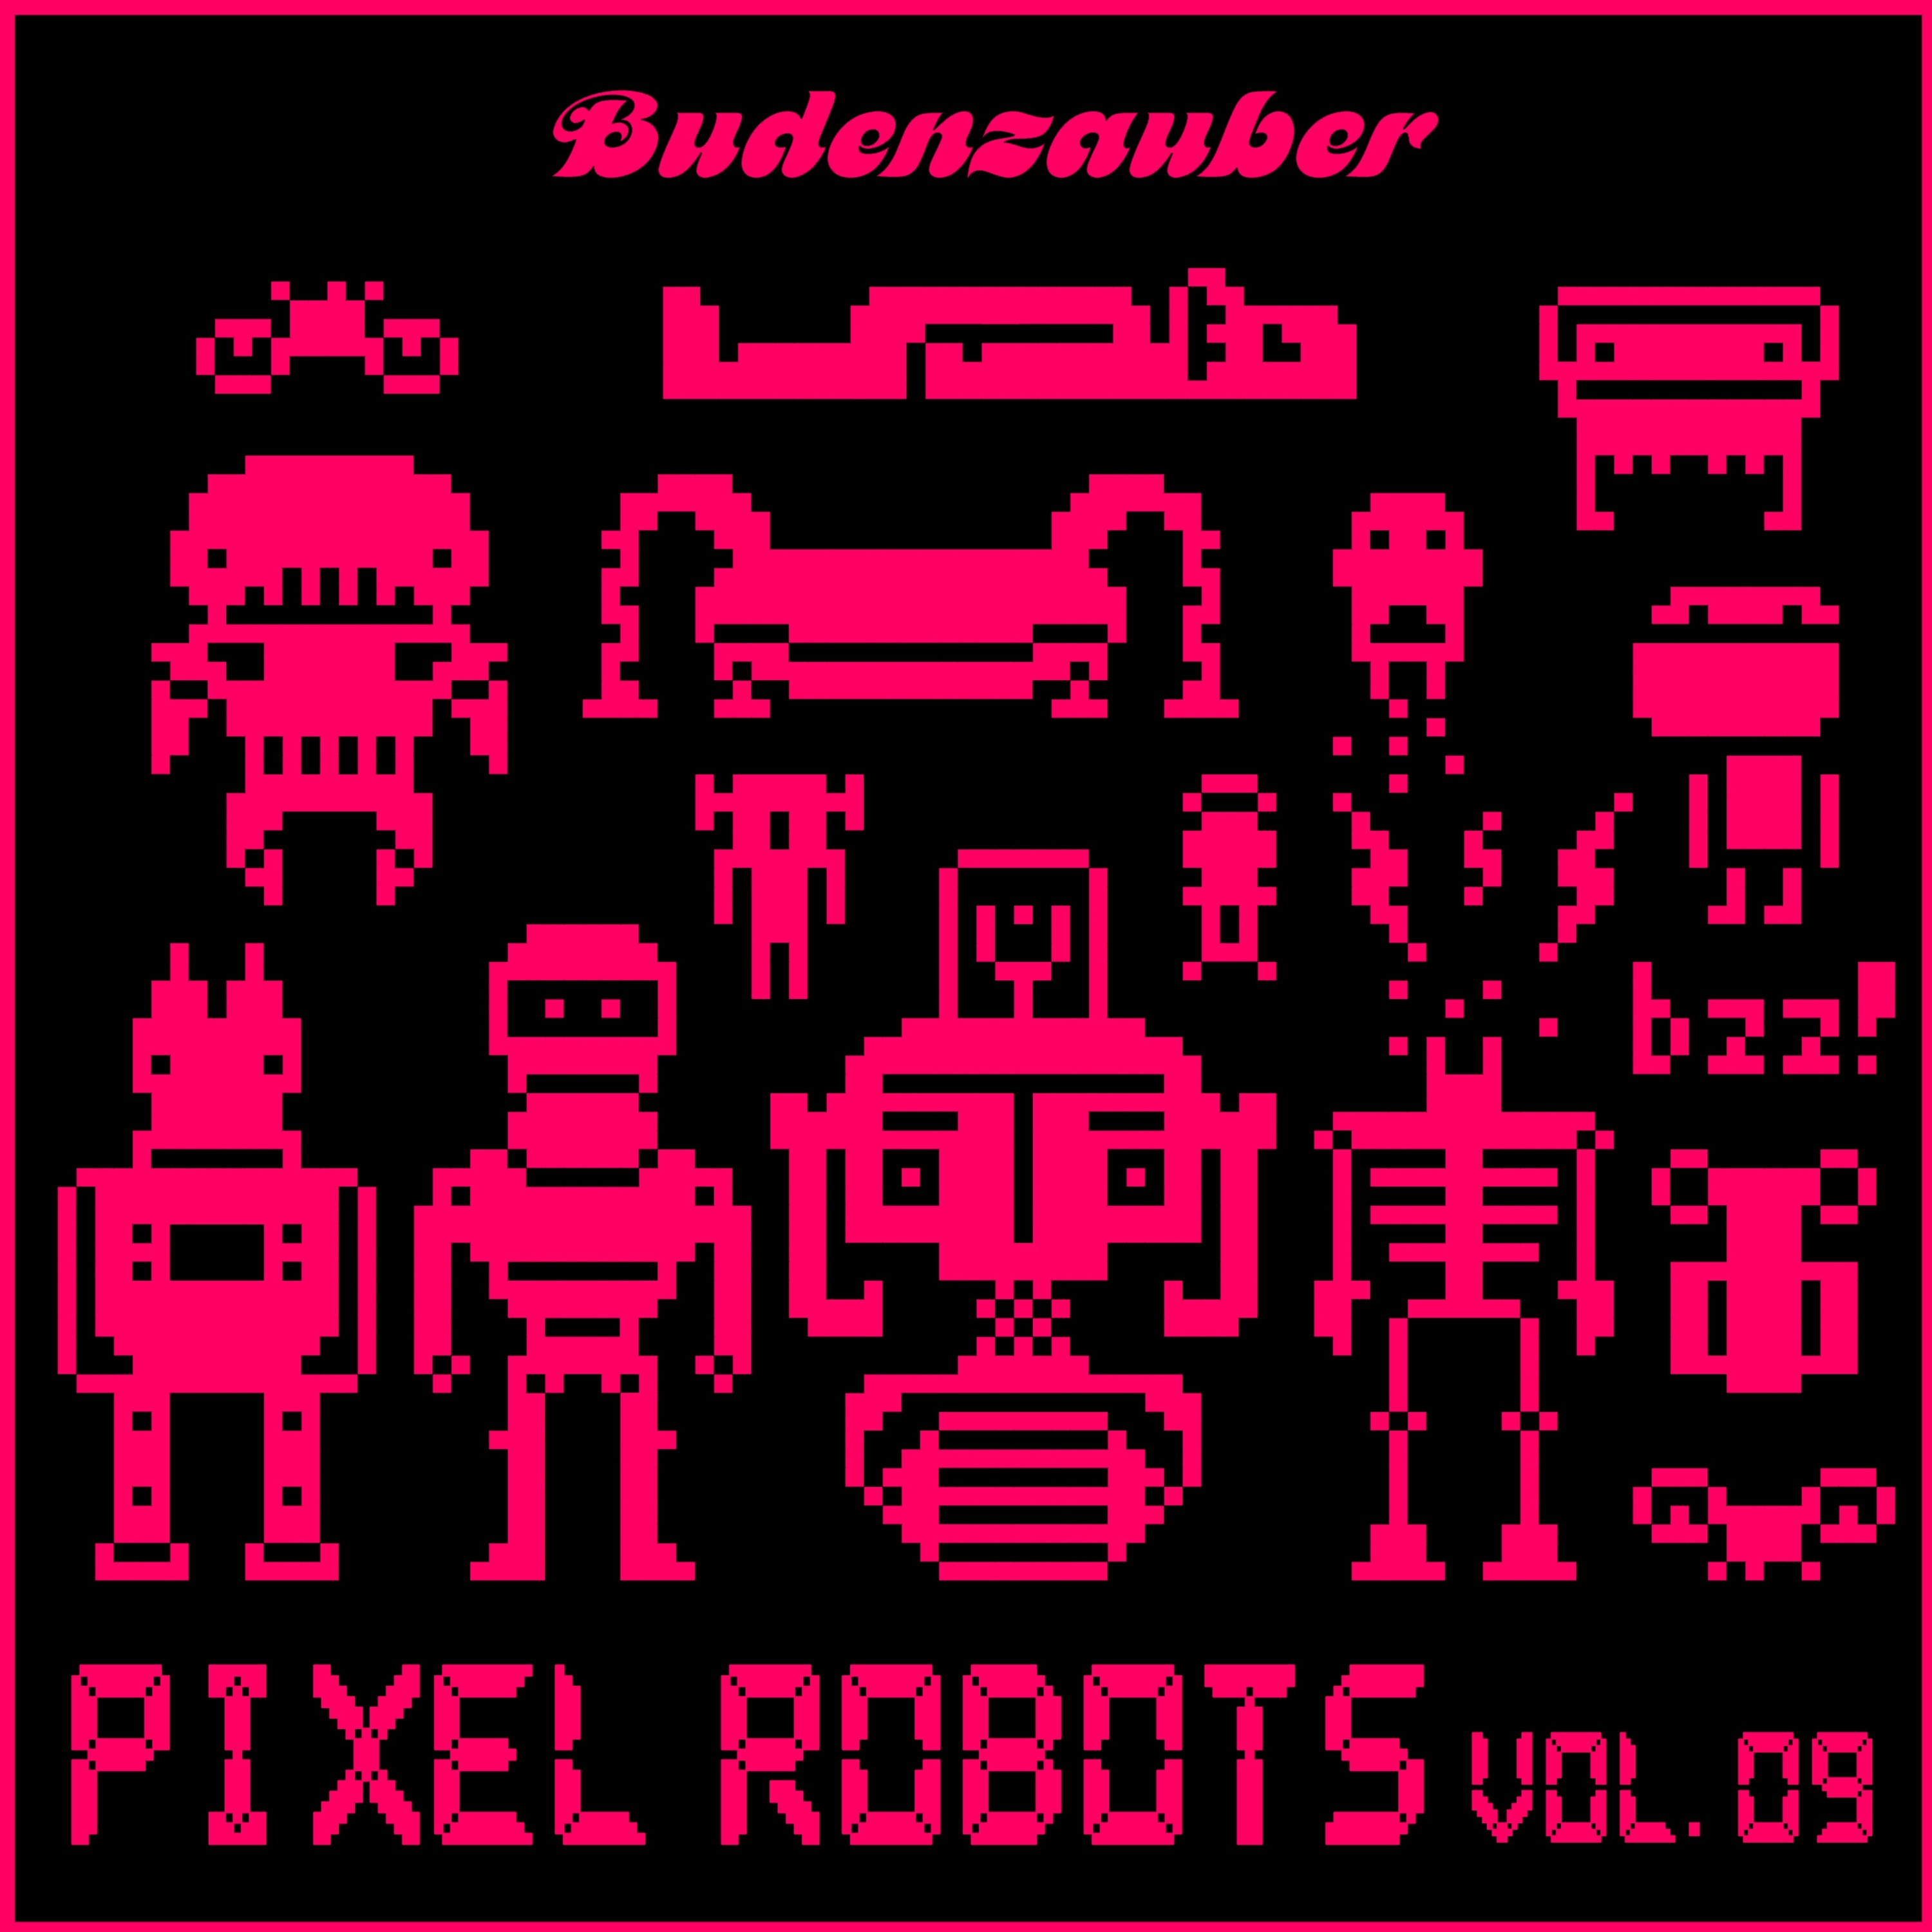 Pixel Robots, Vol. 9